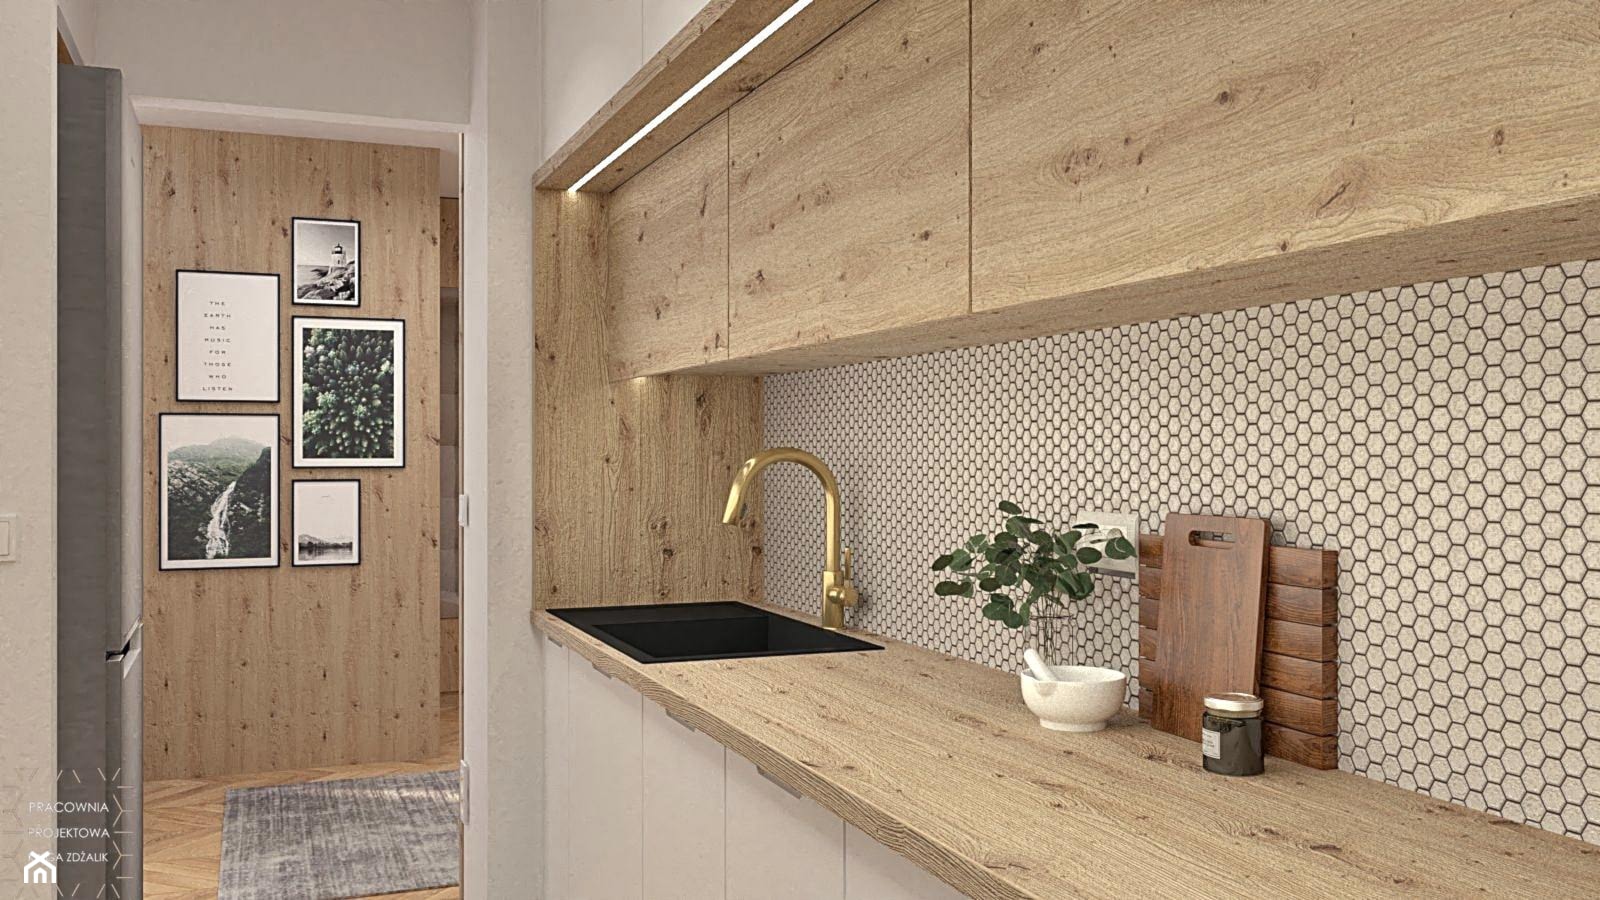 Drewniany szafki i płytki heksagonalne w kuchni. - zdjęcie od PRACOWNIA PROJEKTOWA KINGA ZDŻALIK - Homebook